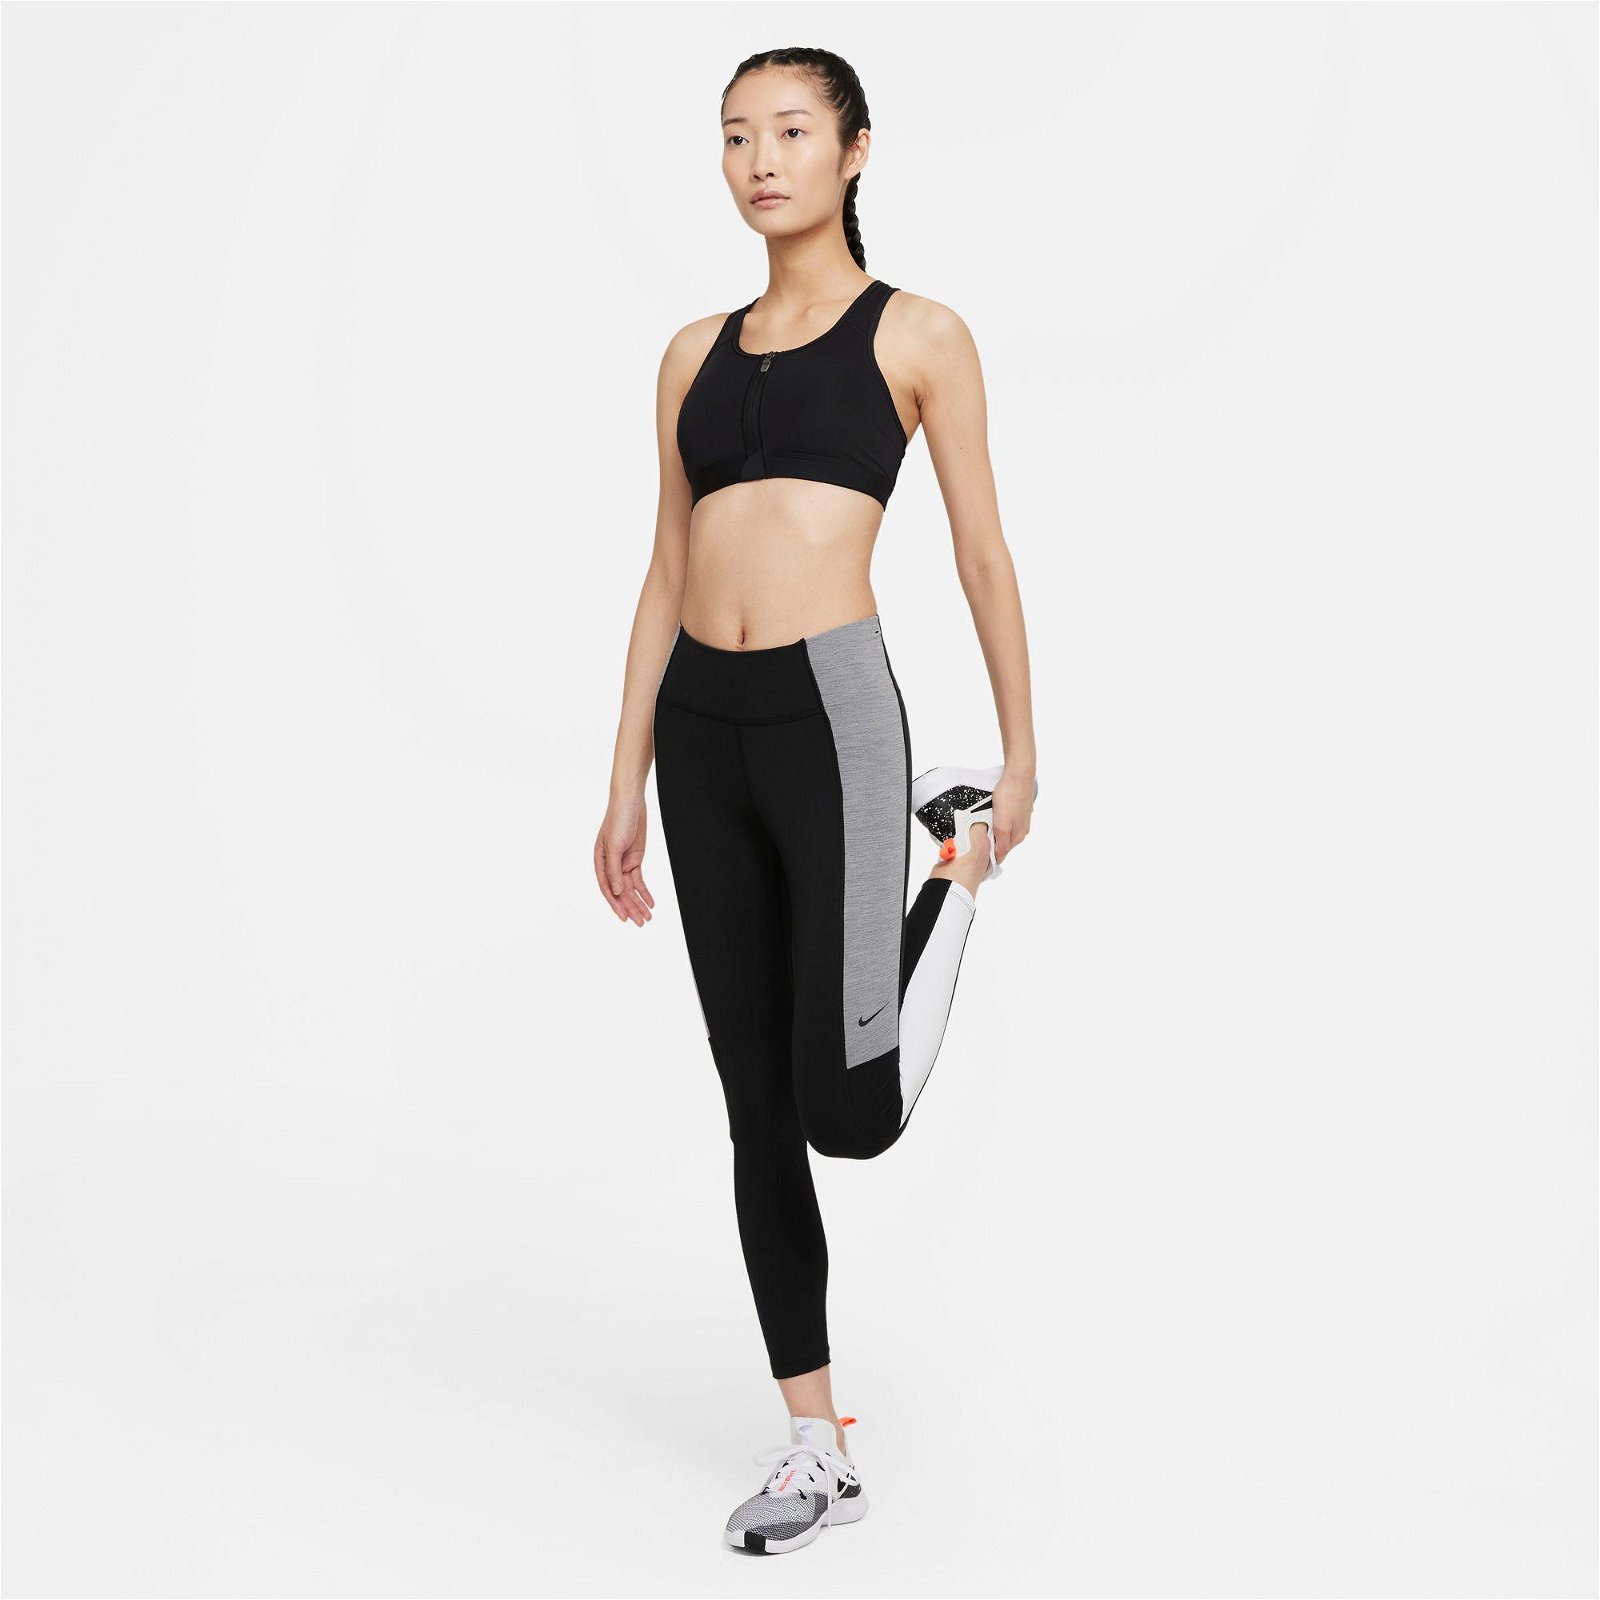 Nike One Dri-Fit Clr MR 7/8 T Büyük Beden Kadın Siyah Tayt